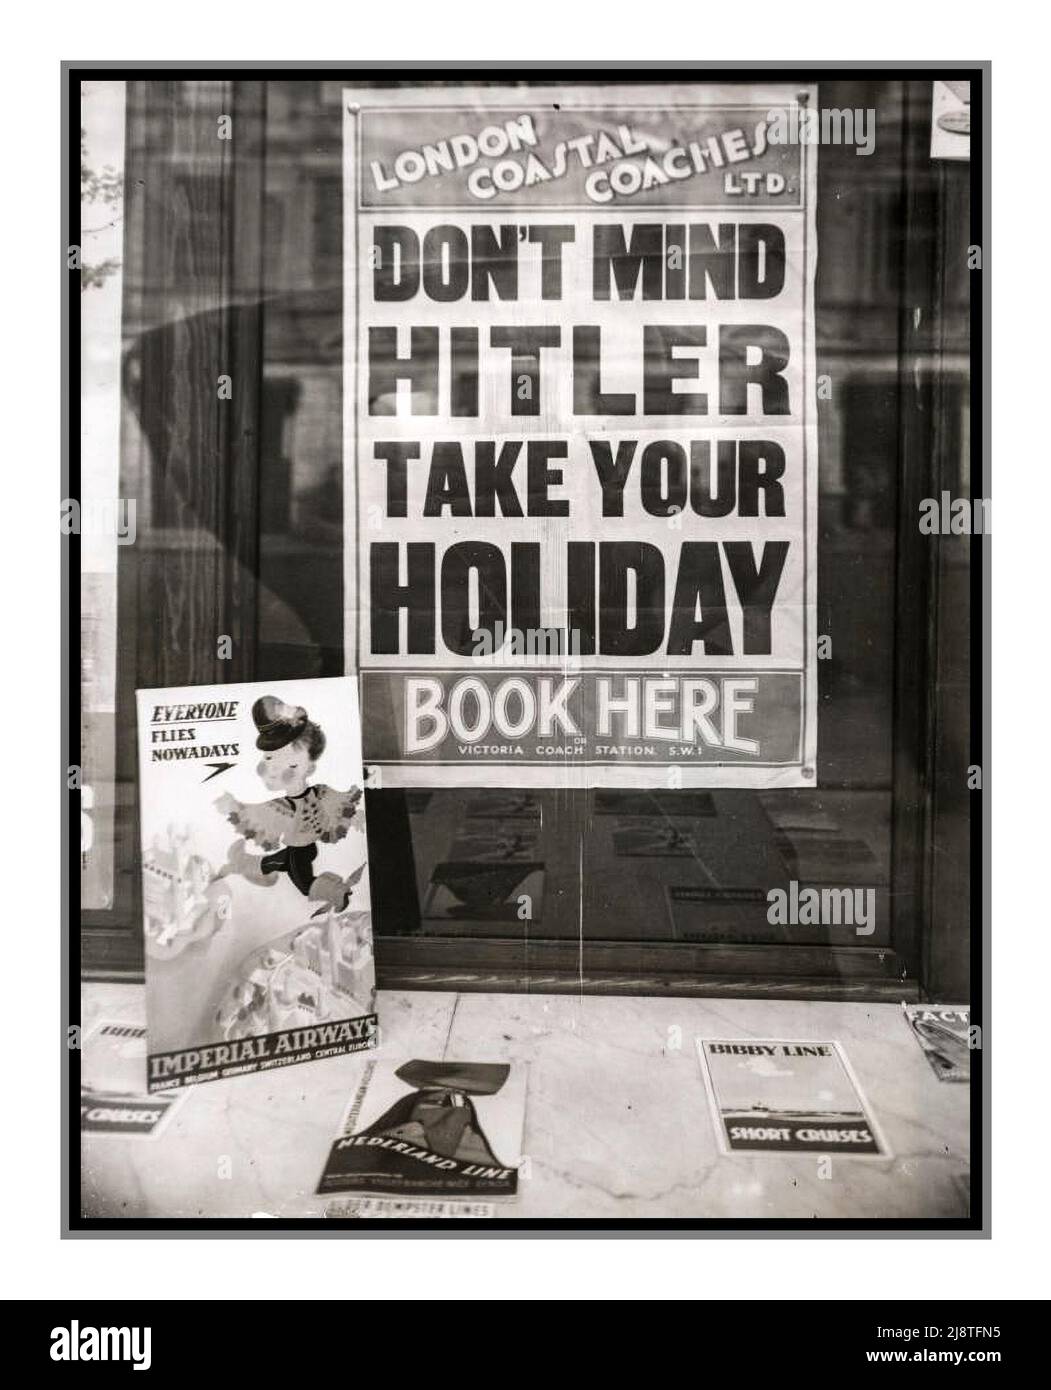 1939 pre WW2 war Holiday Vacation UK poster in un'agenzia di viaggi londinese che consiglia alle persone di prenotare le loro vacanze nonostante la situazione tesa in Europa (Hitler, Germania nazista, e la seconda guerra mondiale). Circa 1939. London Coastal Coaches Ltd Foto Stock